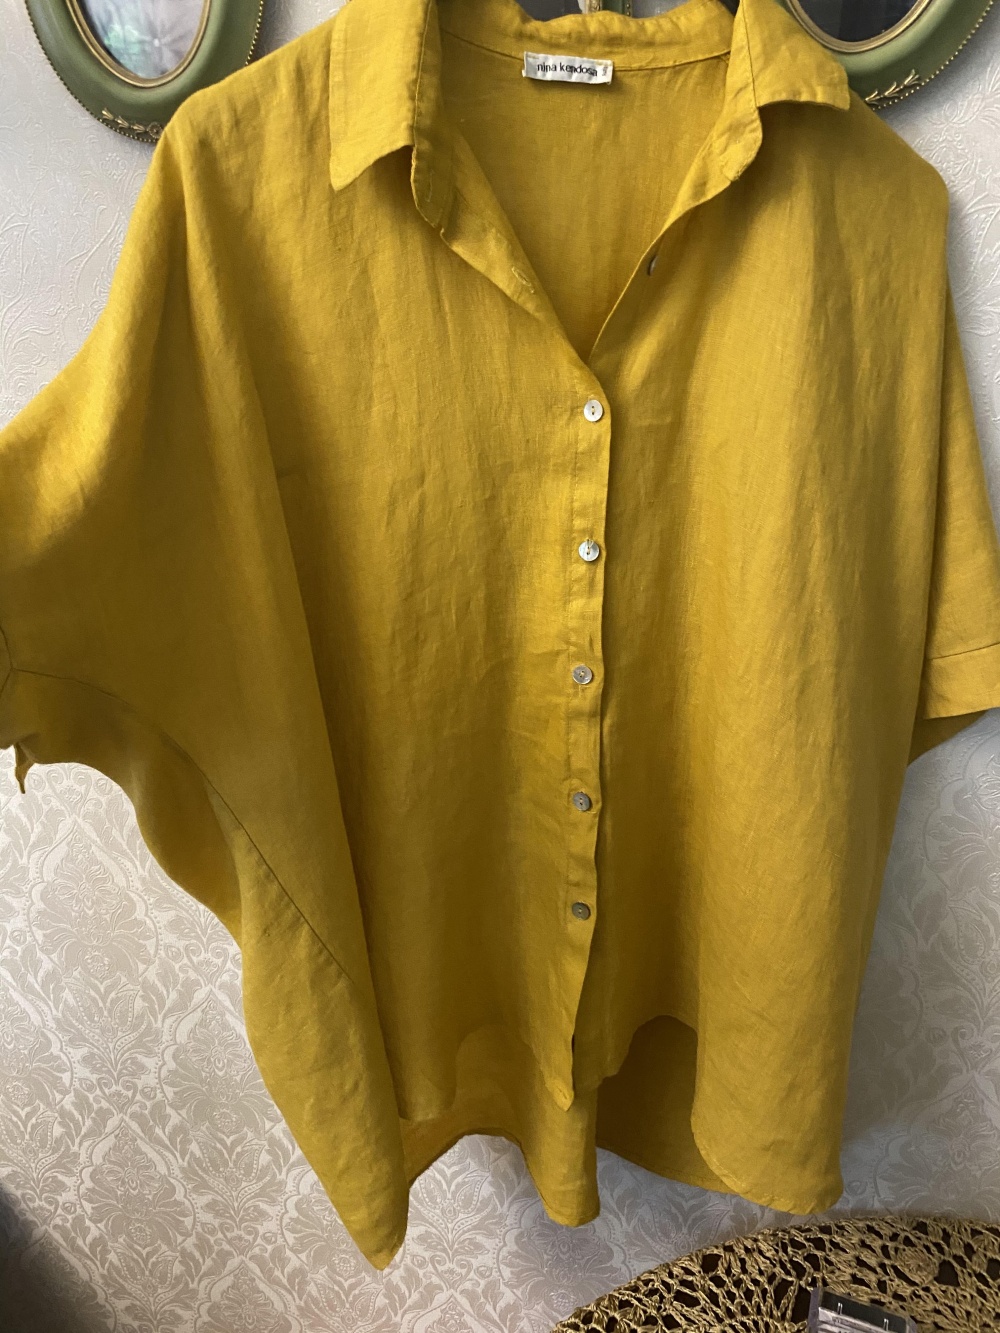 Рубашка , Nina Kendosa, 50-52